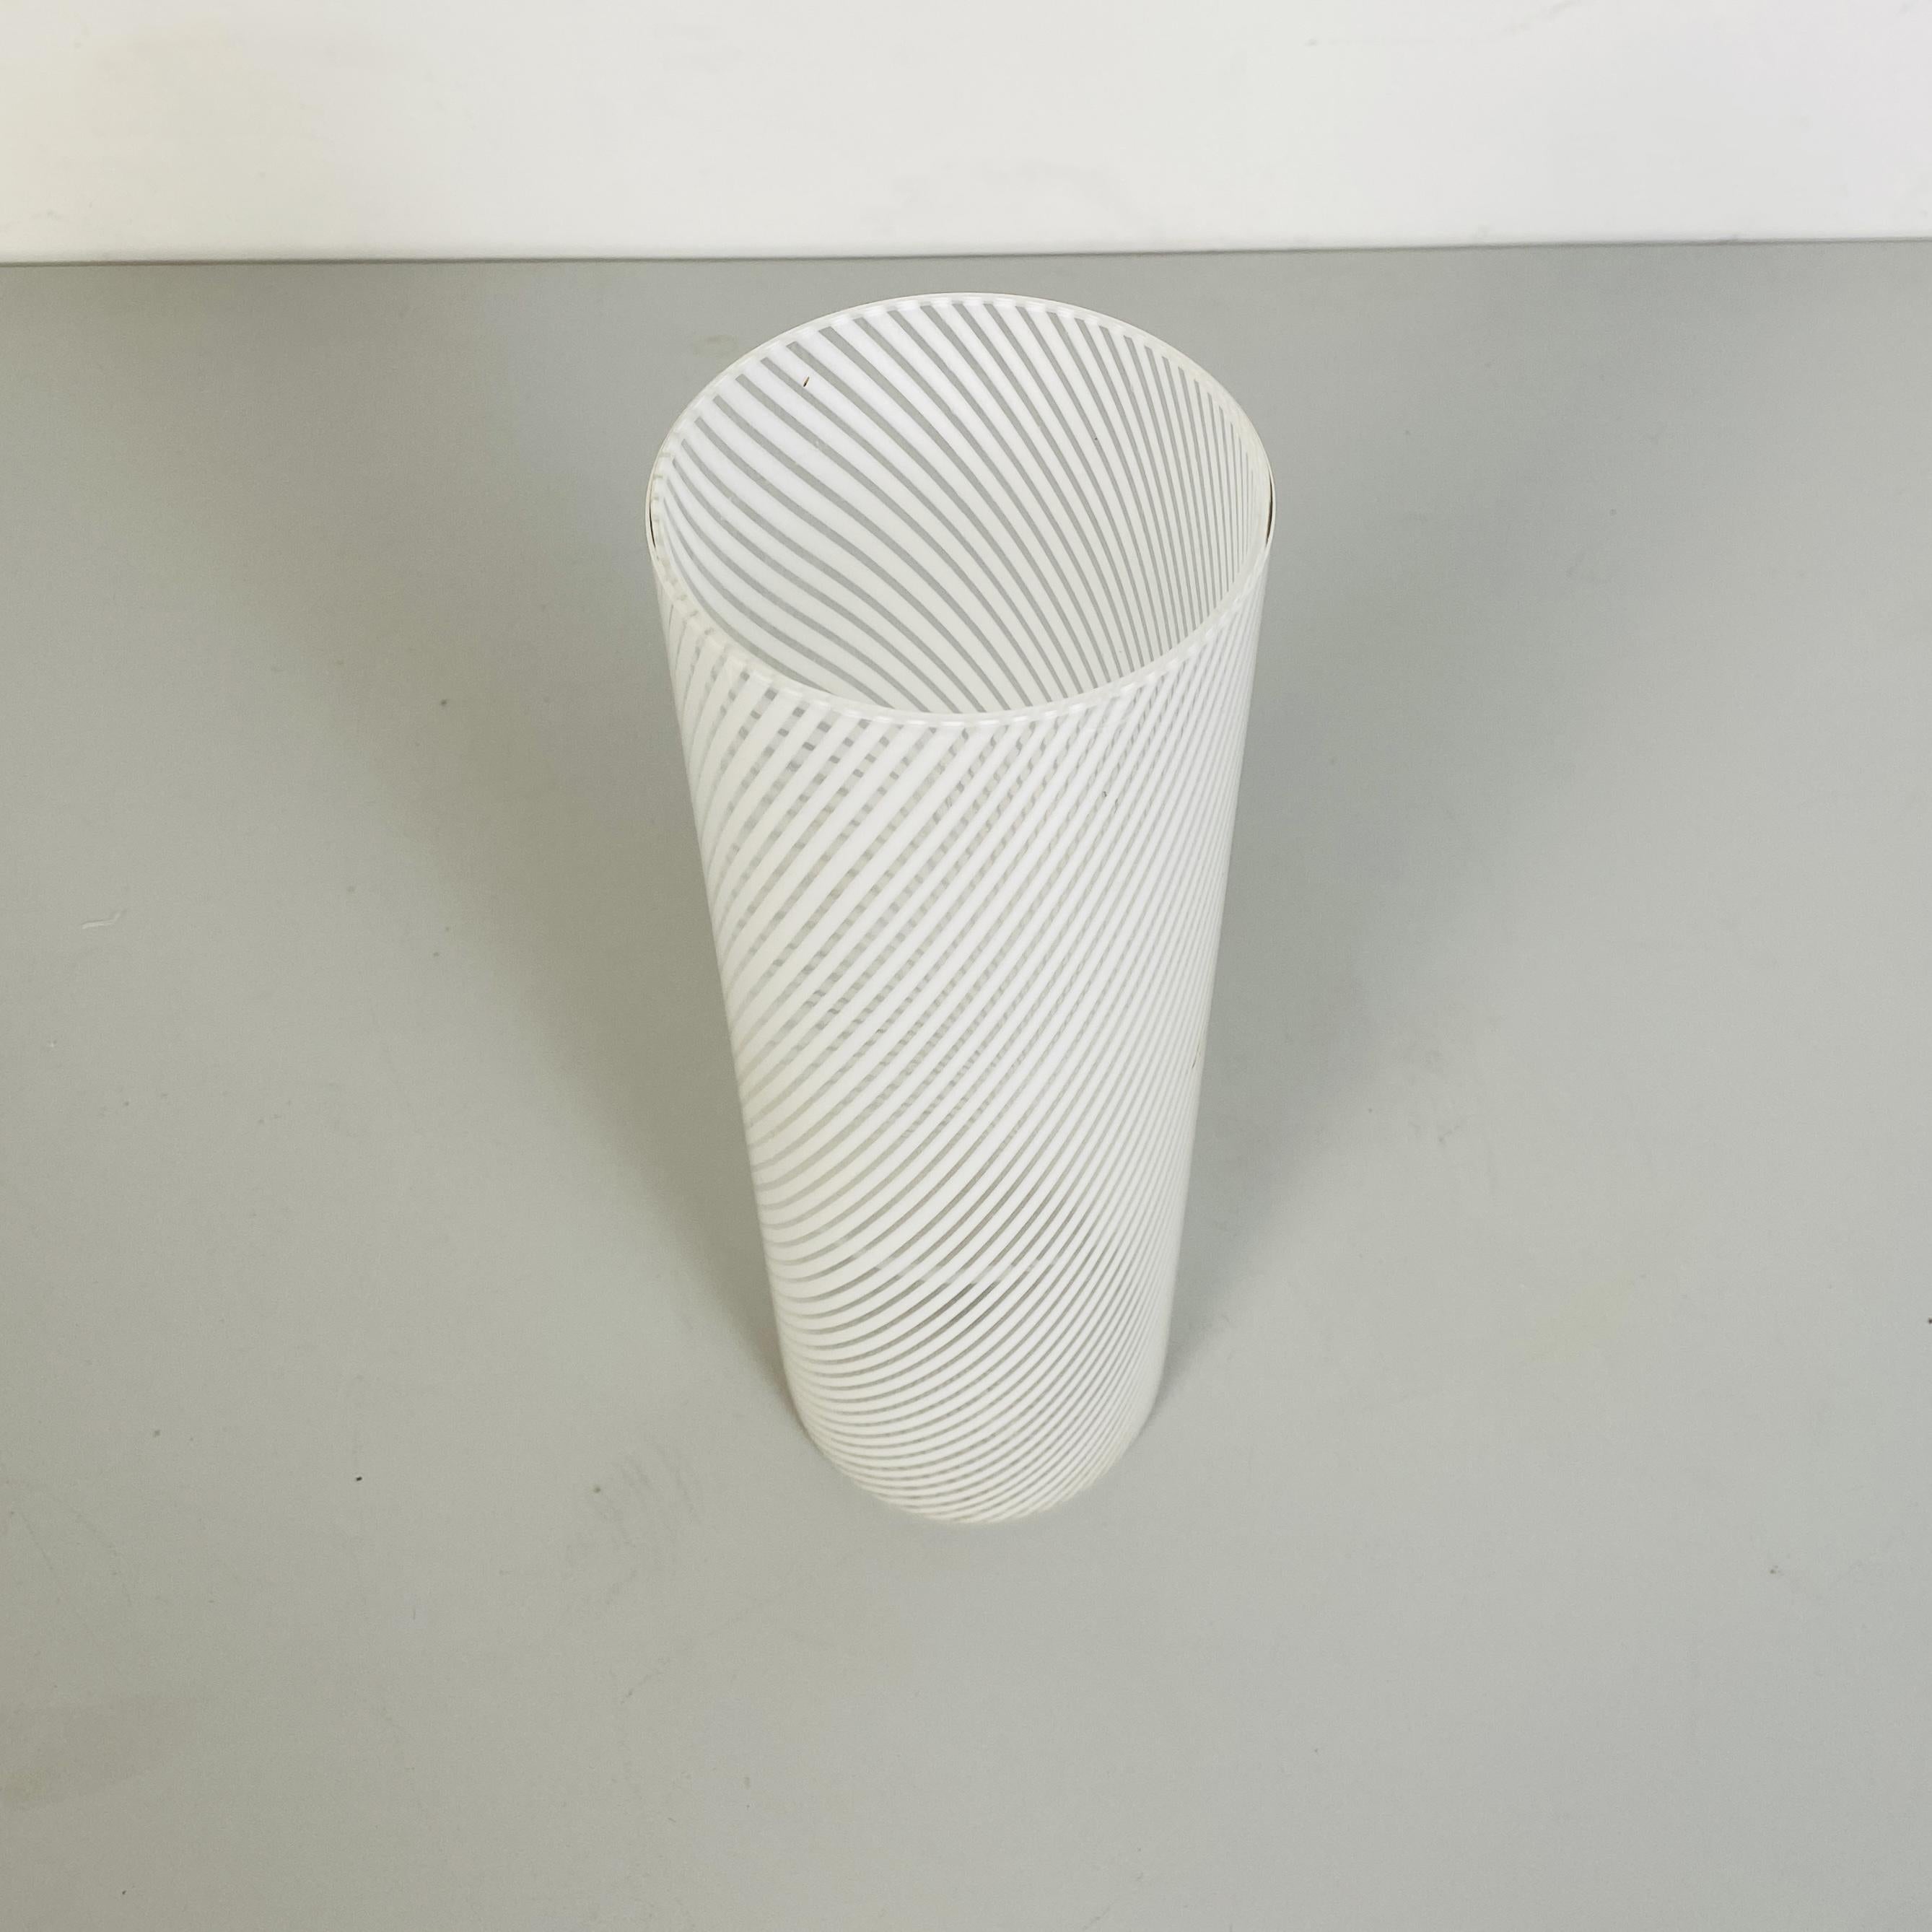 Late 20th Century Italian Mid-Century Modern Cylindrical White Murano Glass Vase, 1970s